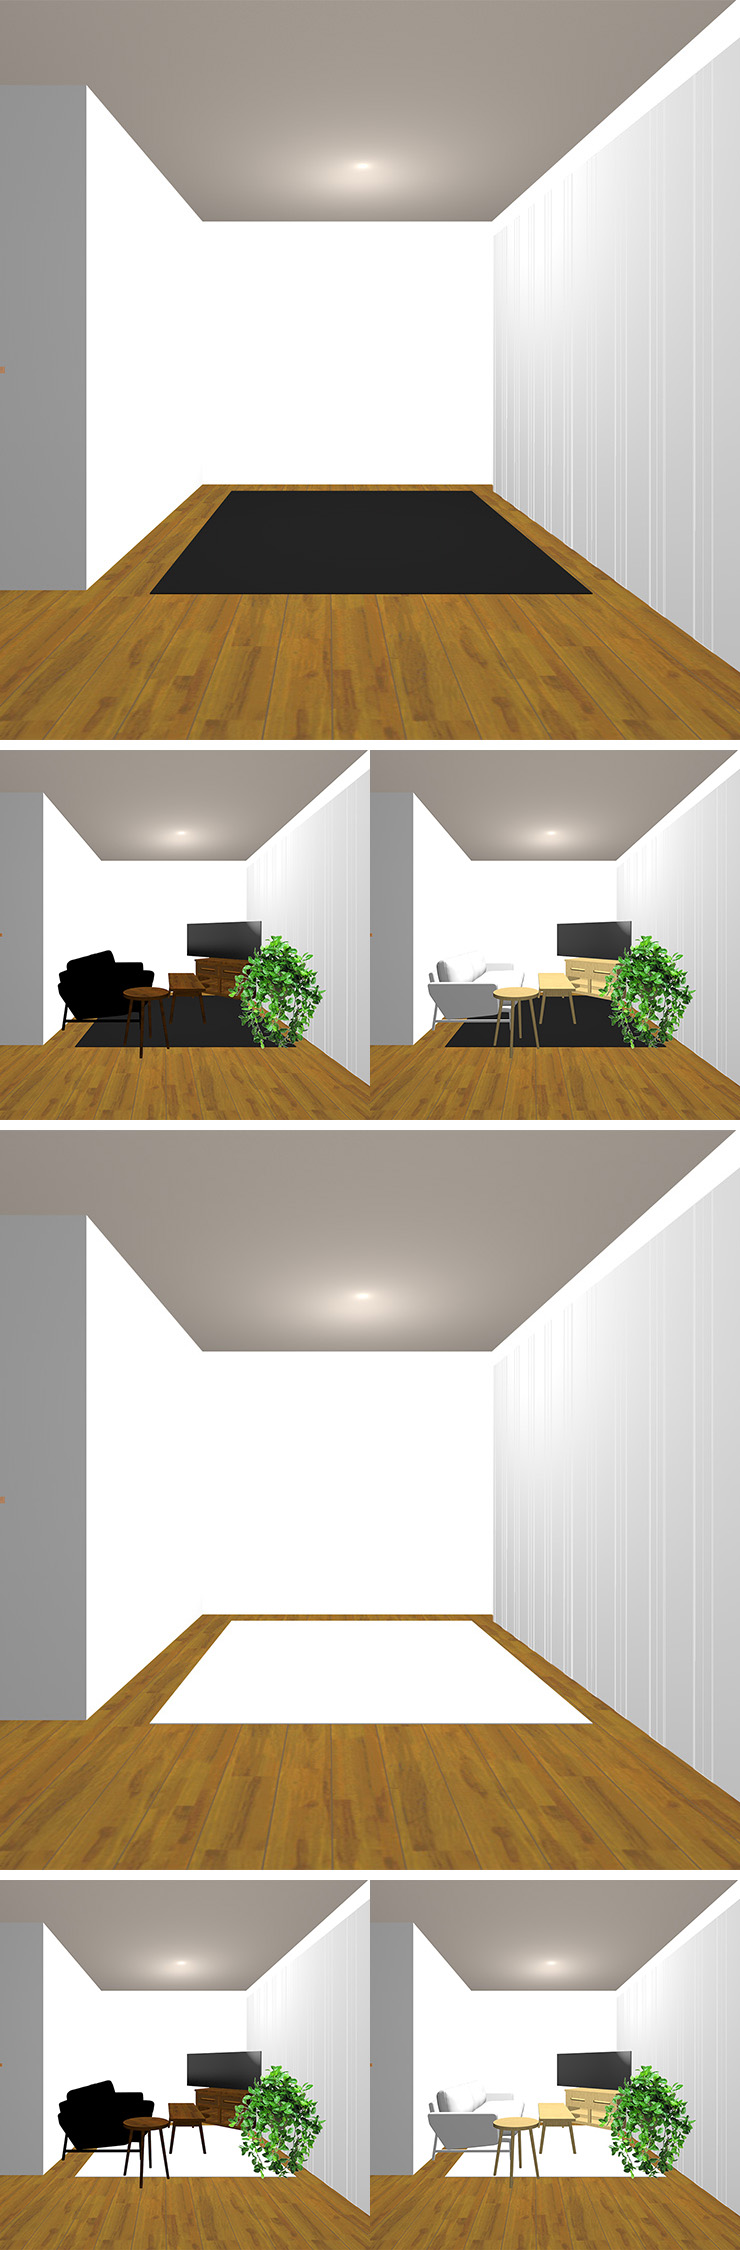 2種類のラグの明るさと2種類の明るさの家具の組み合わせ